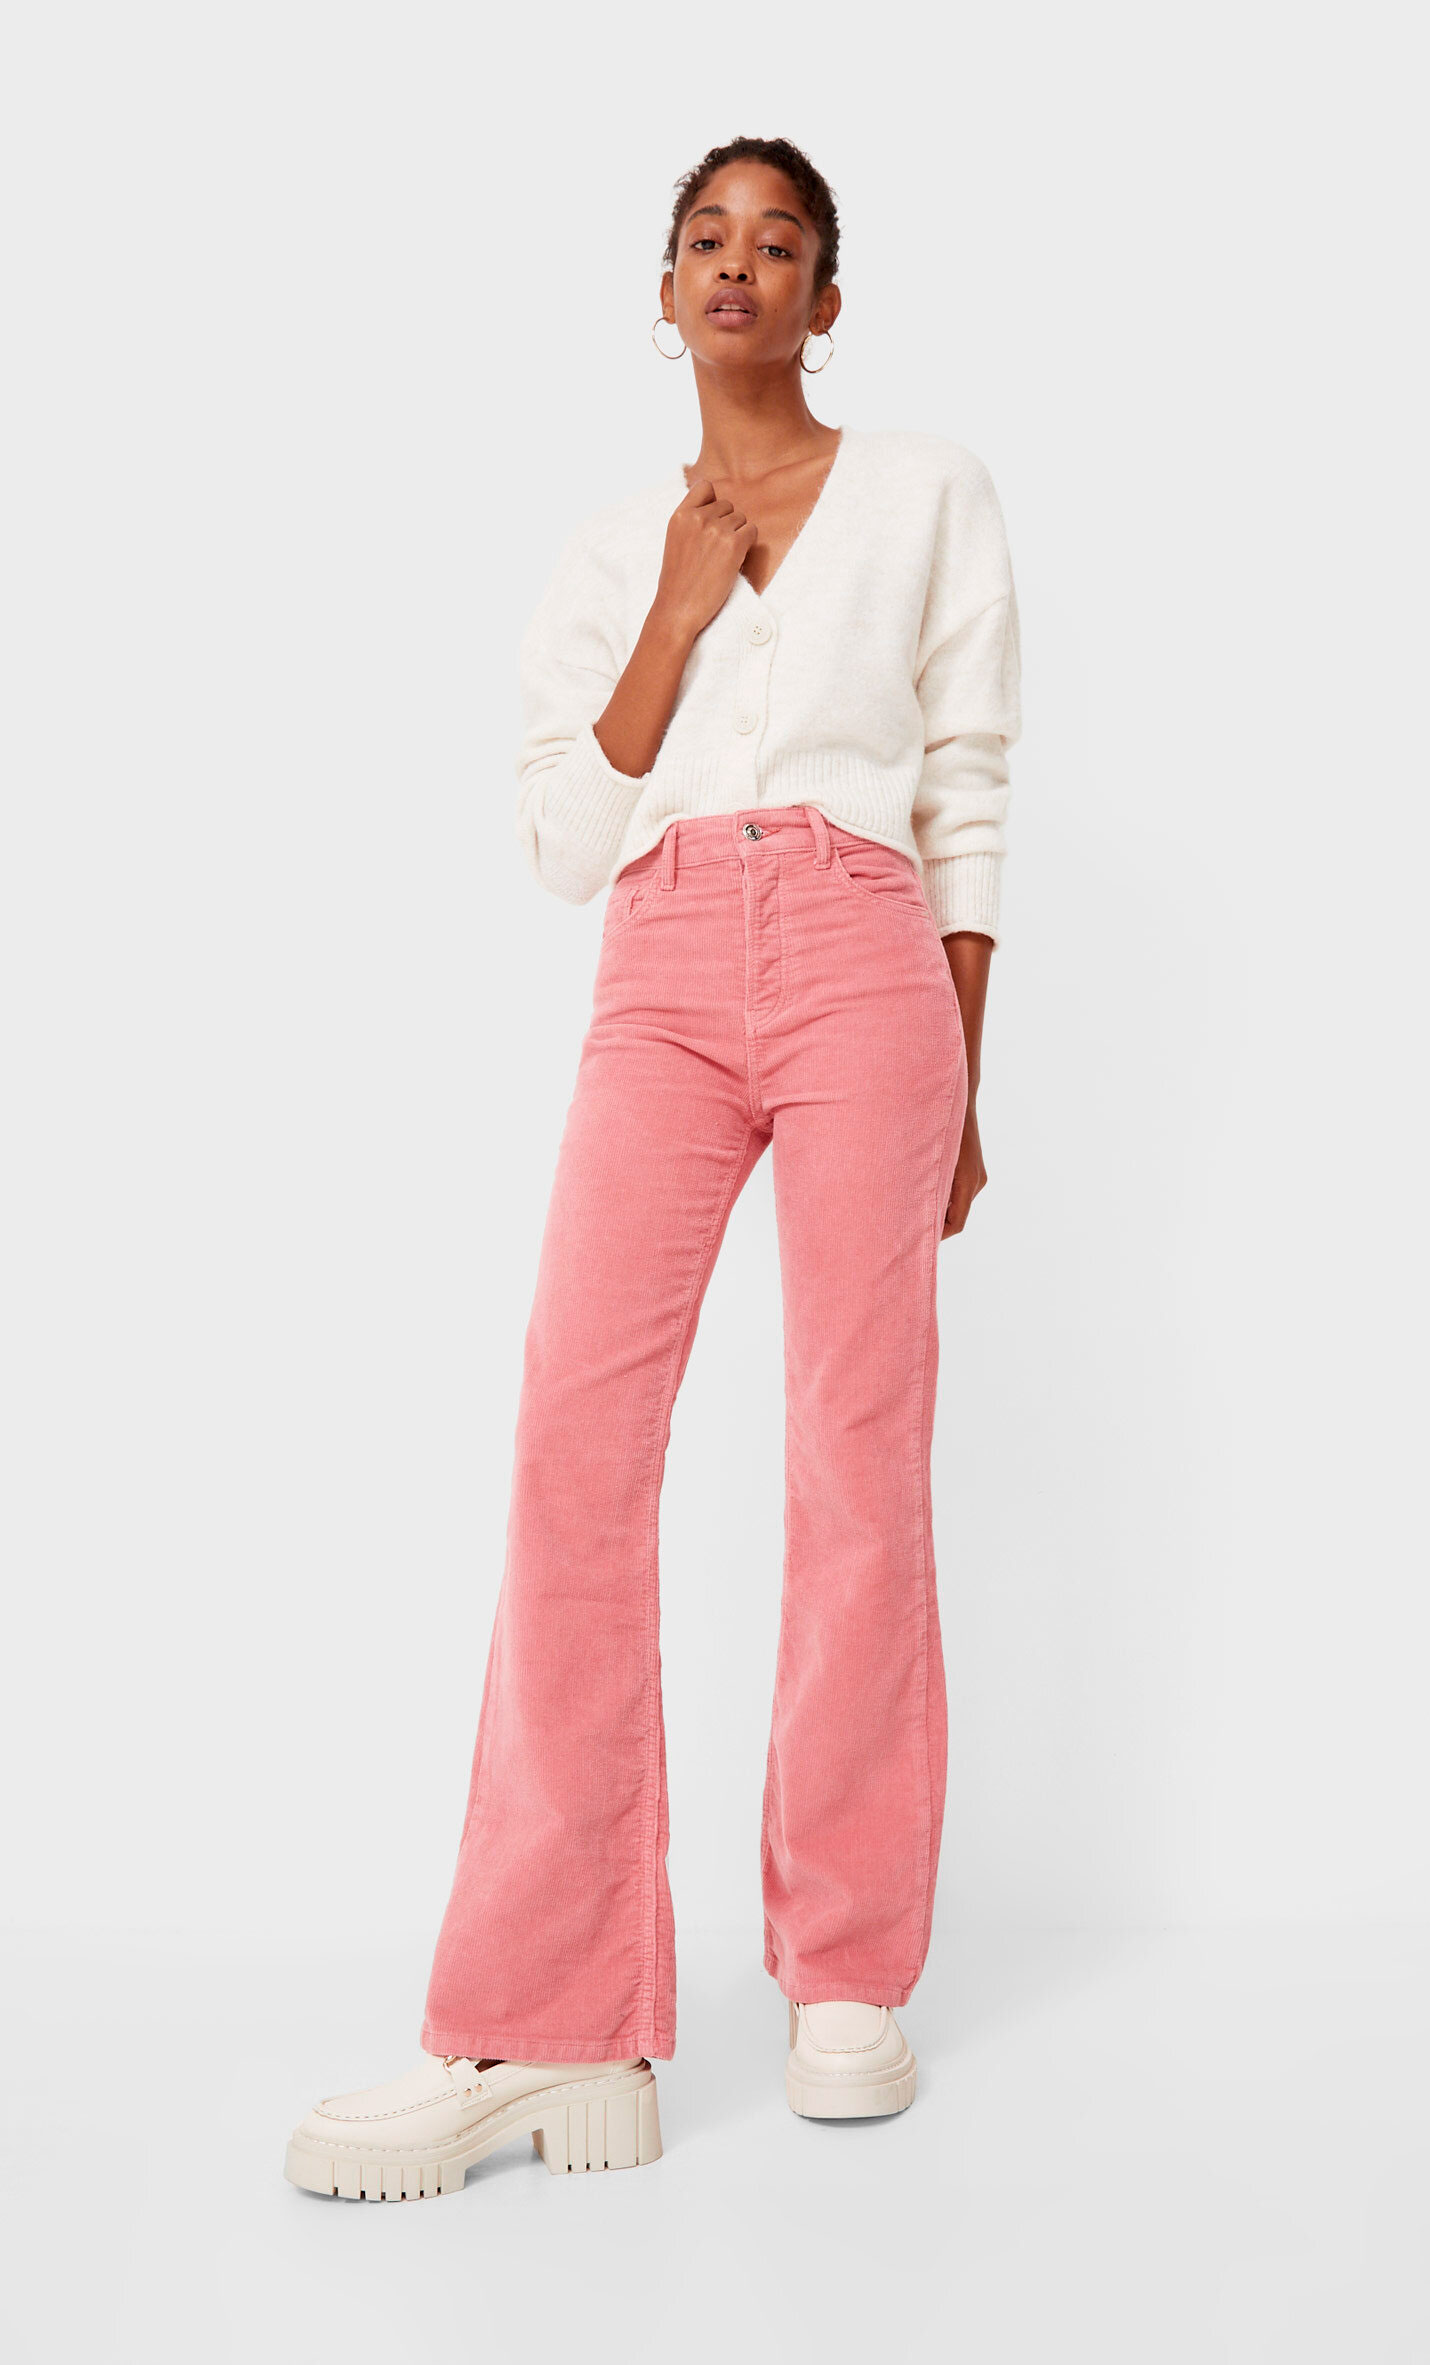 Pantalón rosa + sudadera verde: mix tendencia en low cost que vuelve loca a las